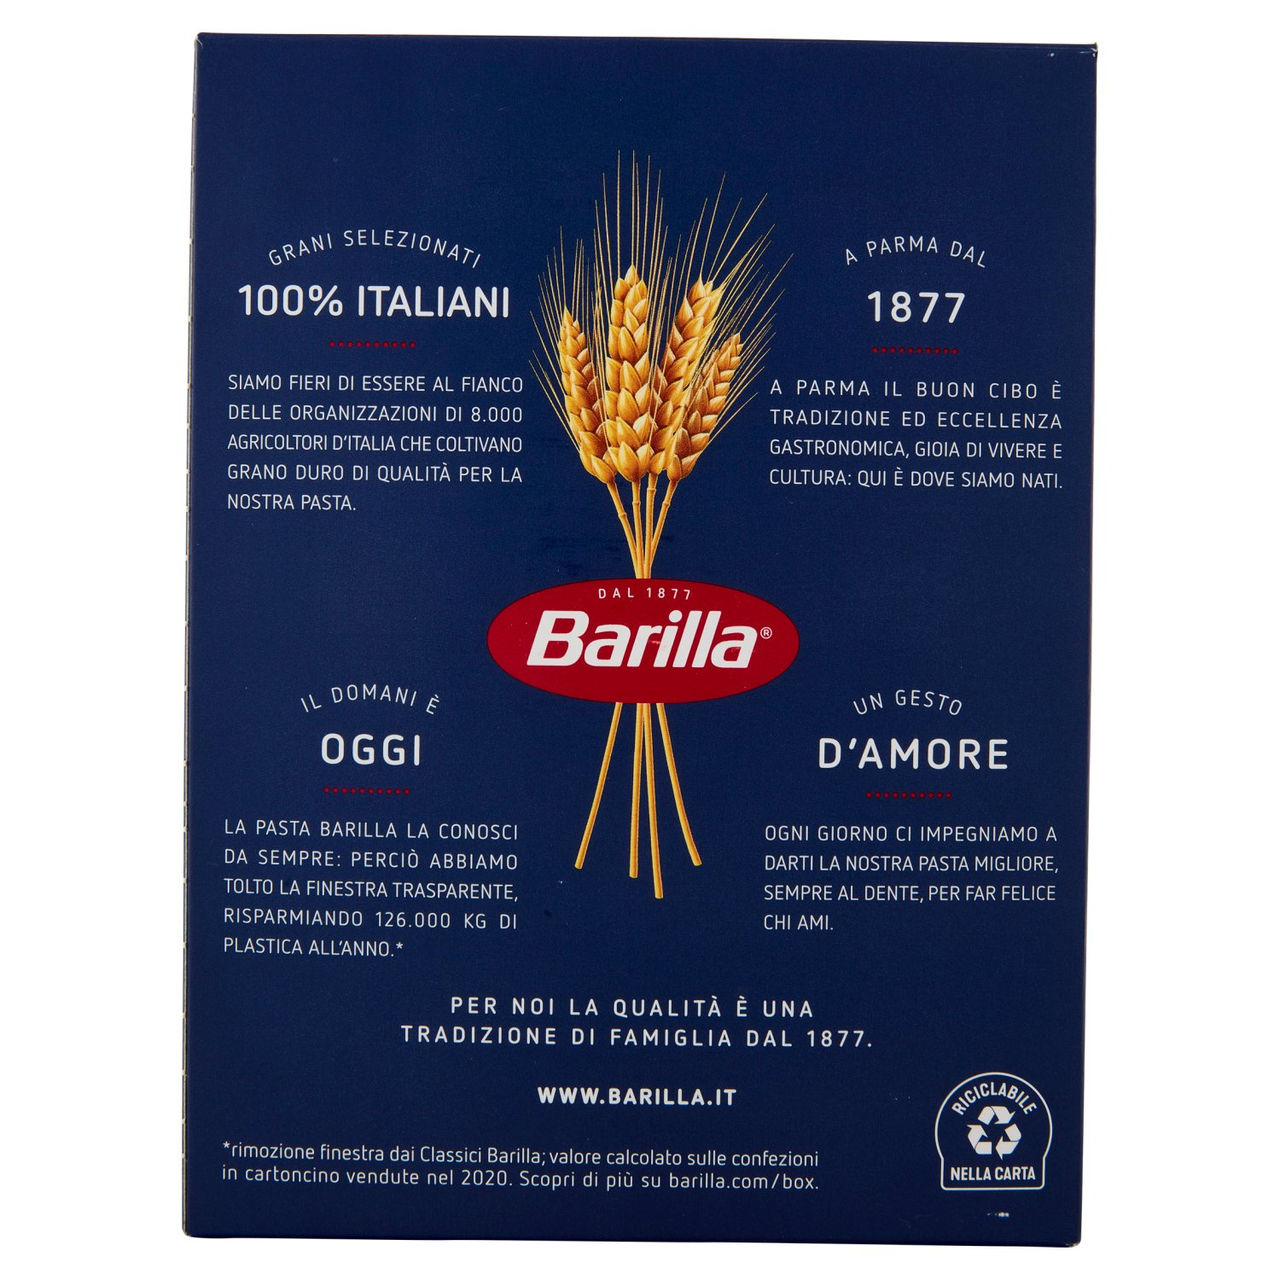 Barilla Pasta Farfalle n.265 100% Grano Italiano 500g